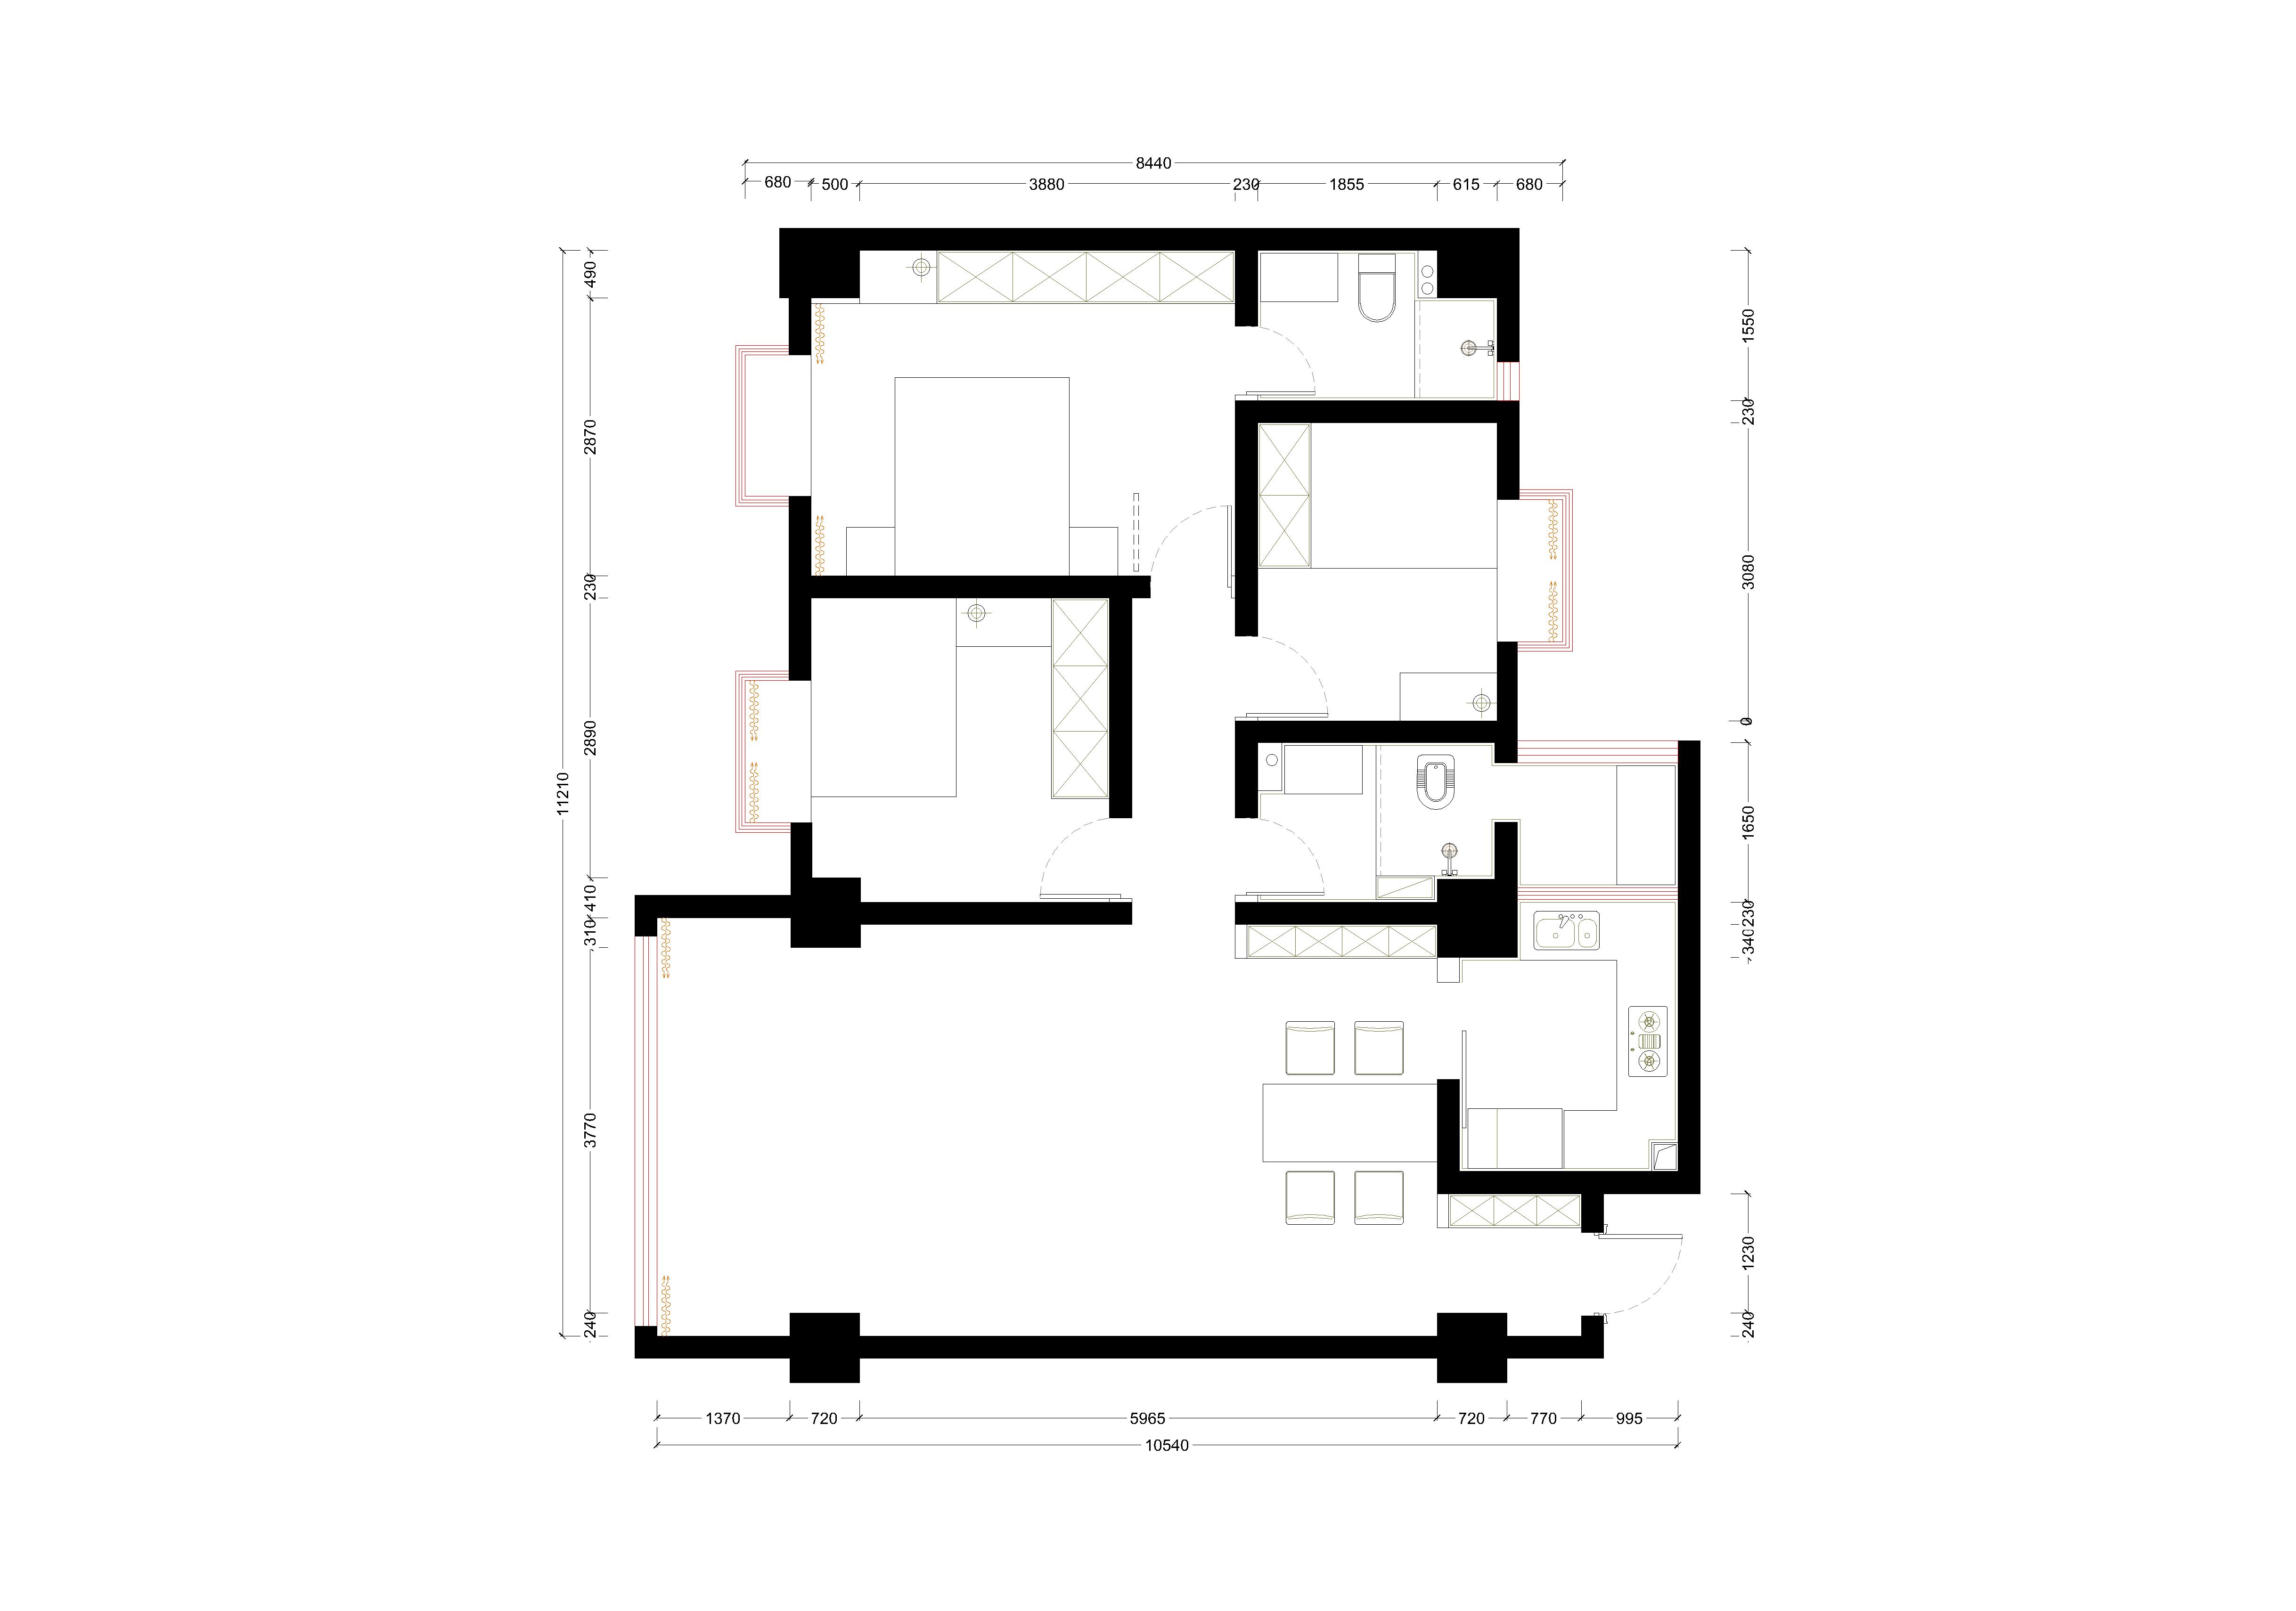 Home Plan-Model.jpg